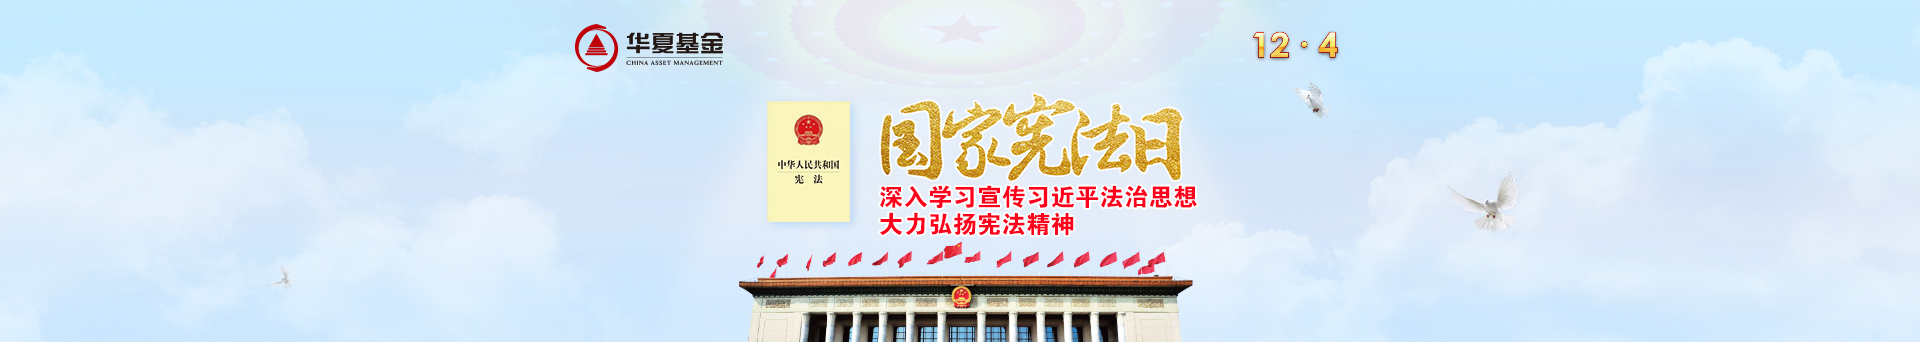 20201126-华夏宪法日首页banner1920_342